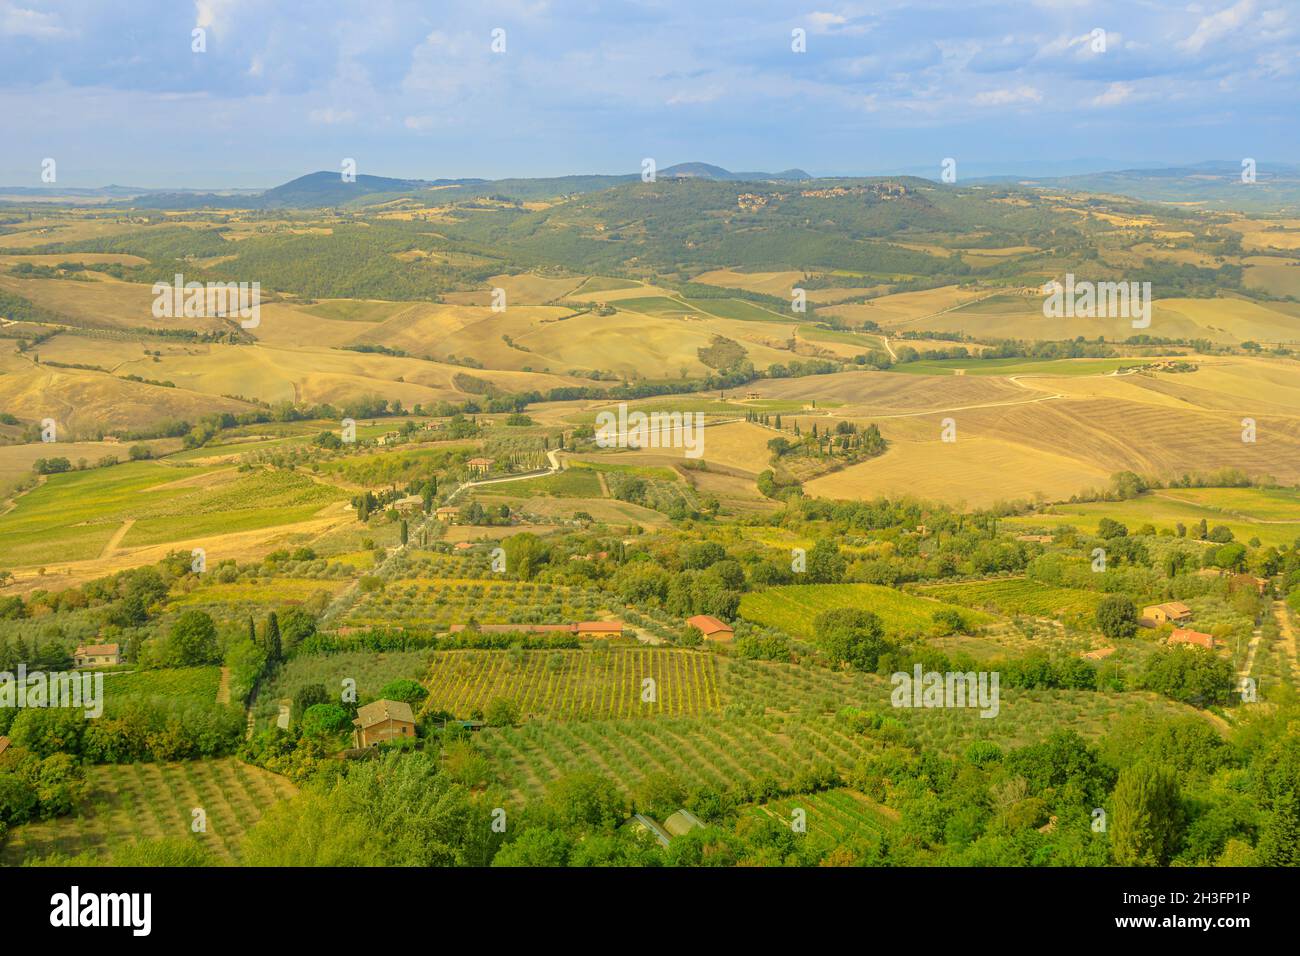 Paesaggio aereo sui vigneti terrazzati del paese viticolo toscano Montepulciano in appennino toscano-emiliano. Campagna italiana e famosa Foto Stock